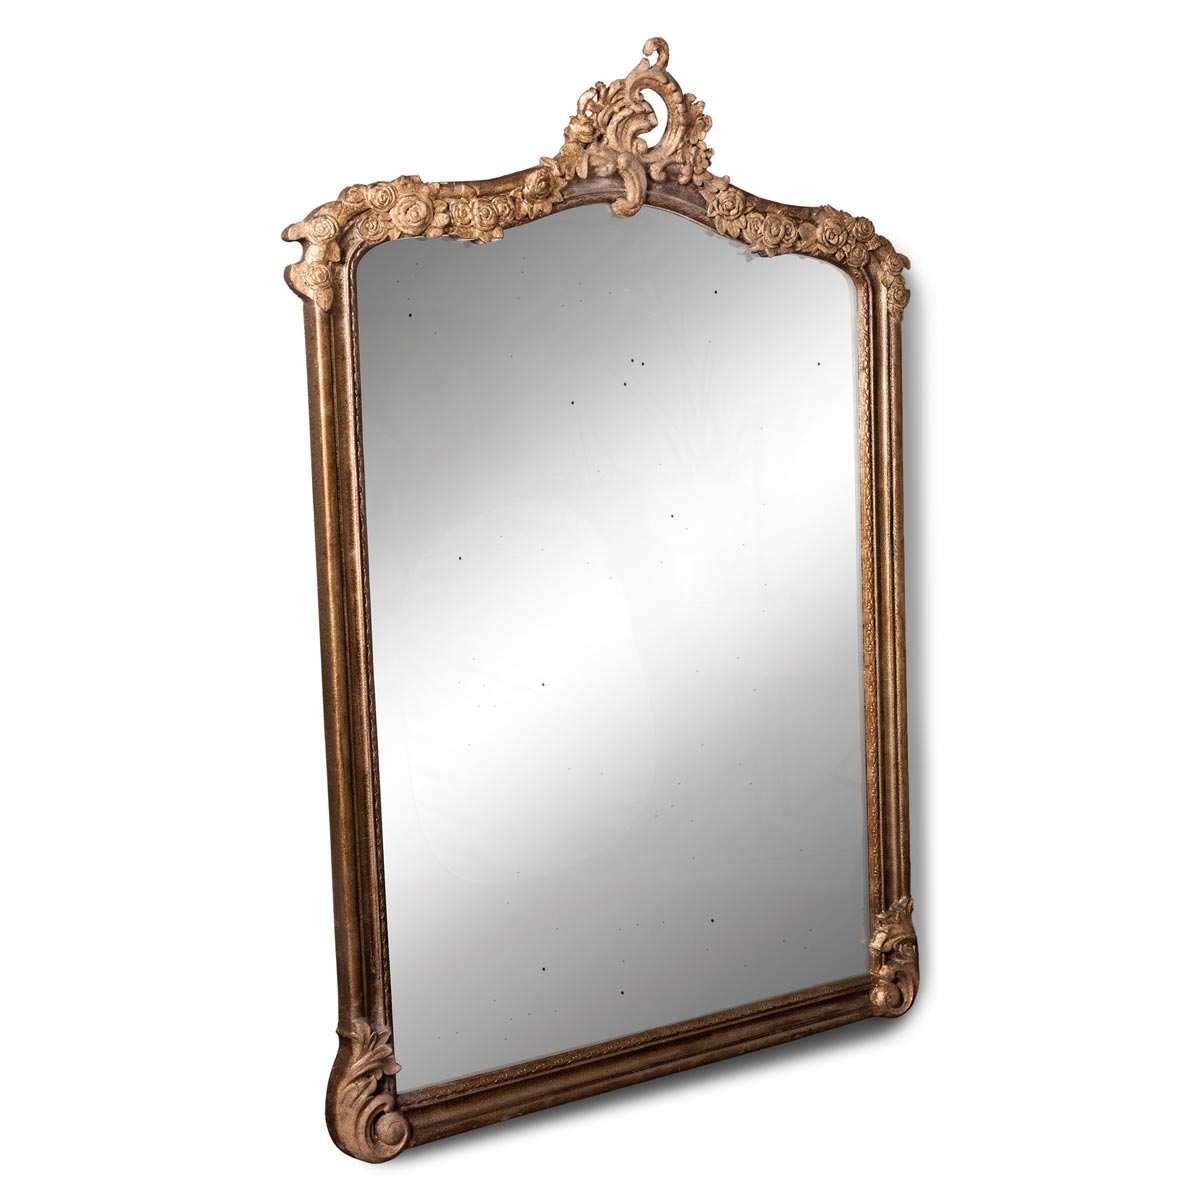 HK Living Limited Edition Gold Mirror Specchio Anticato LMO0012